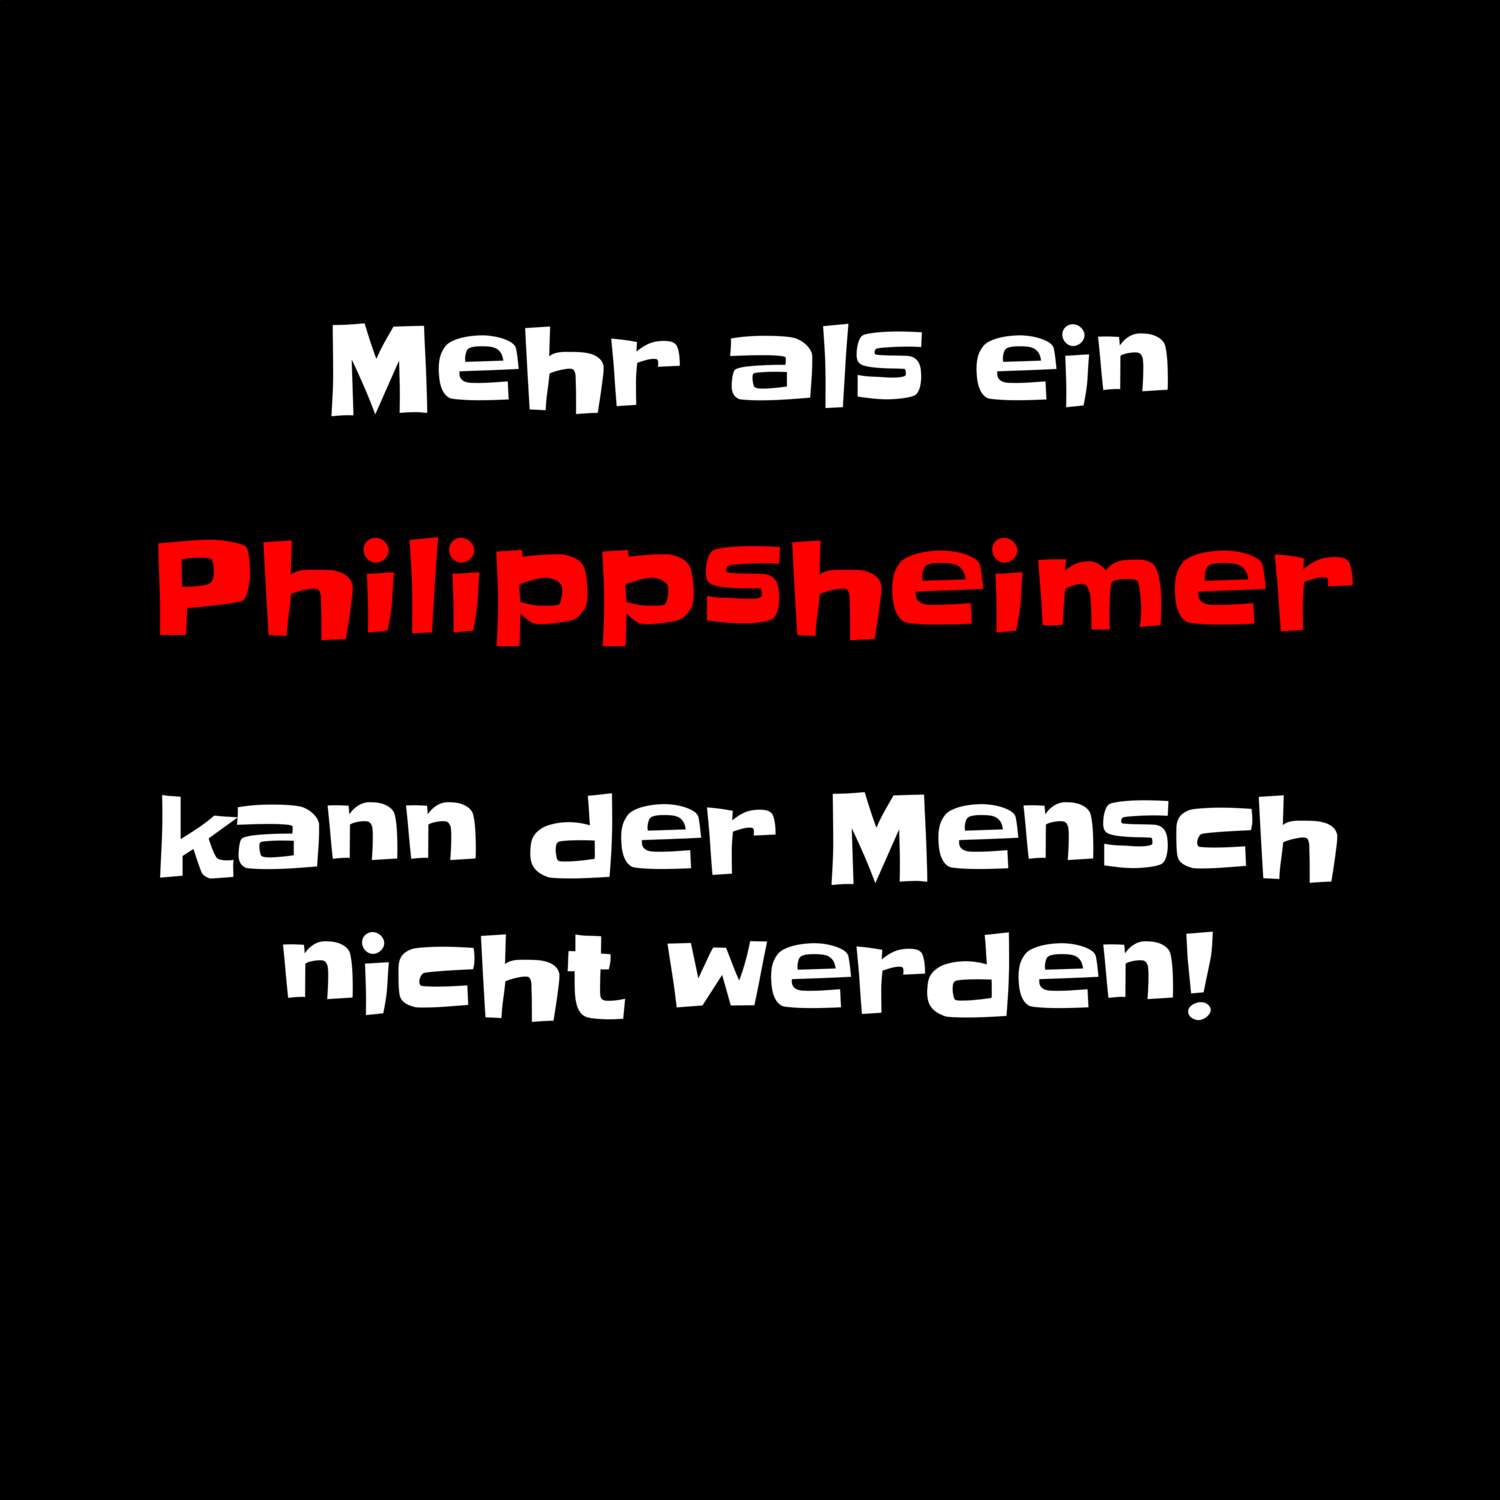 Philippsheim T-Shirt »Mehr als ein«